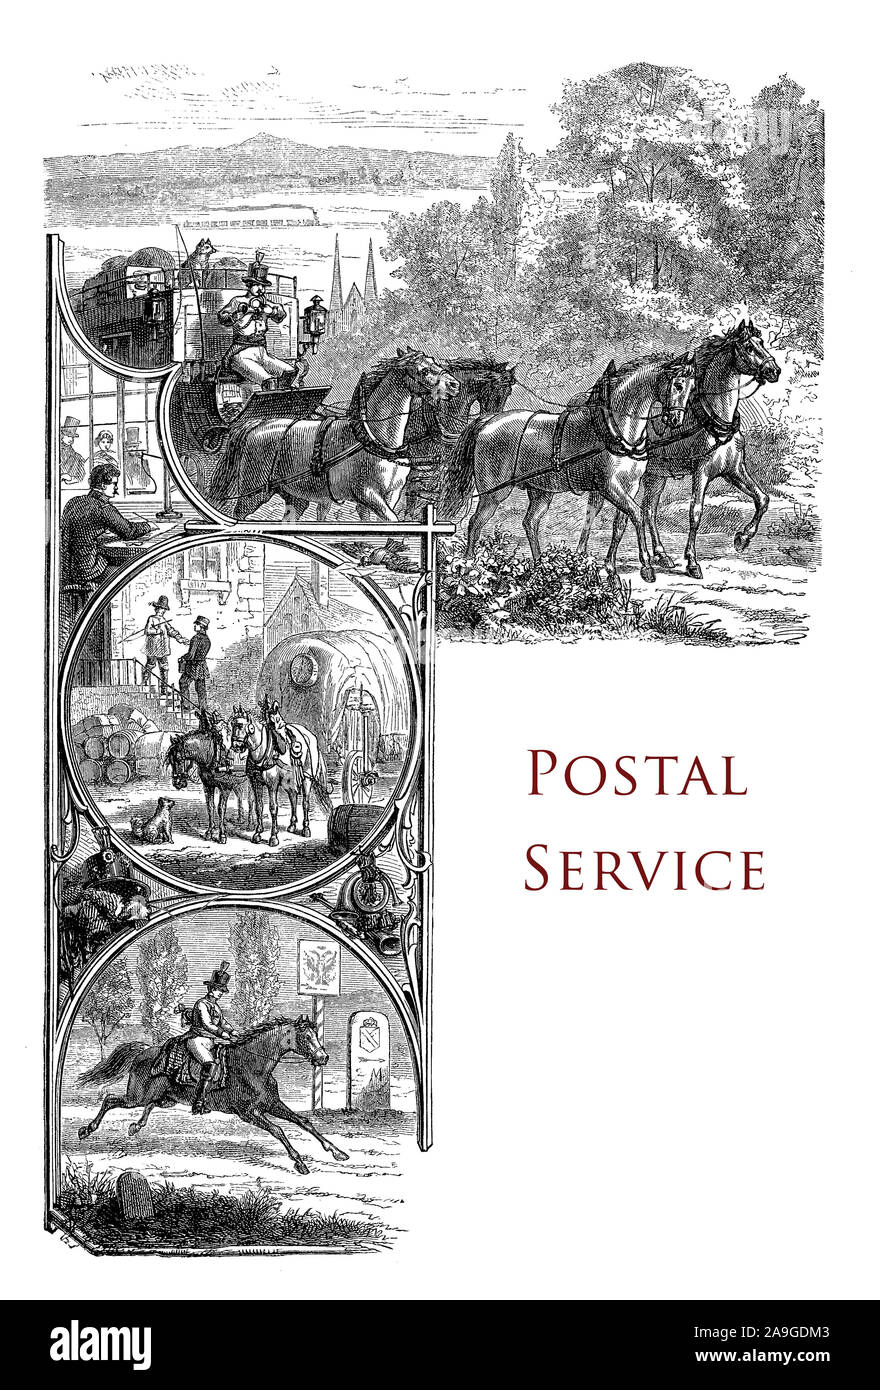 Vintage chapitre page décrivant l'histoire du service postal avec illustration d'un messager à cheval et chariot postal Banque D'Images